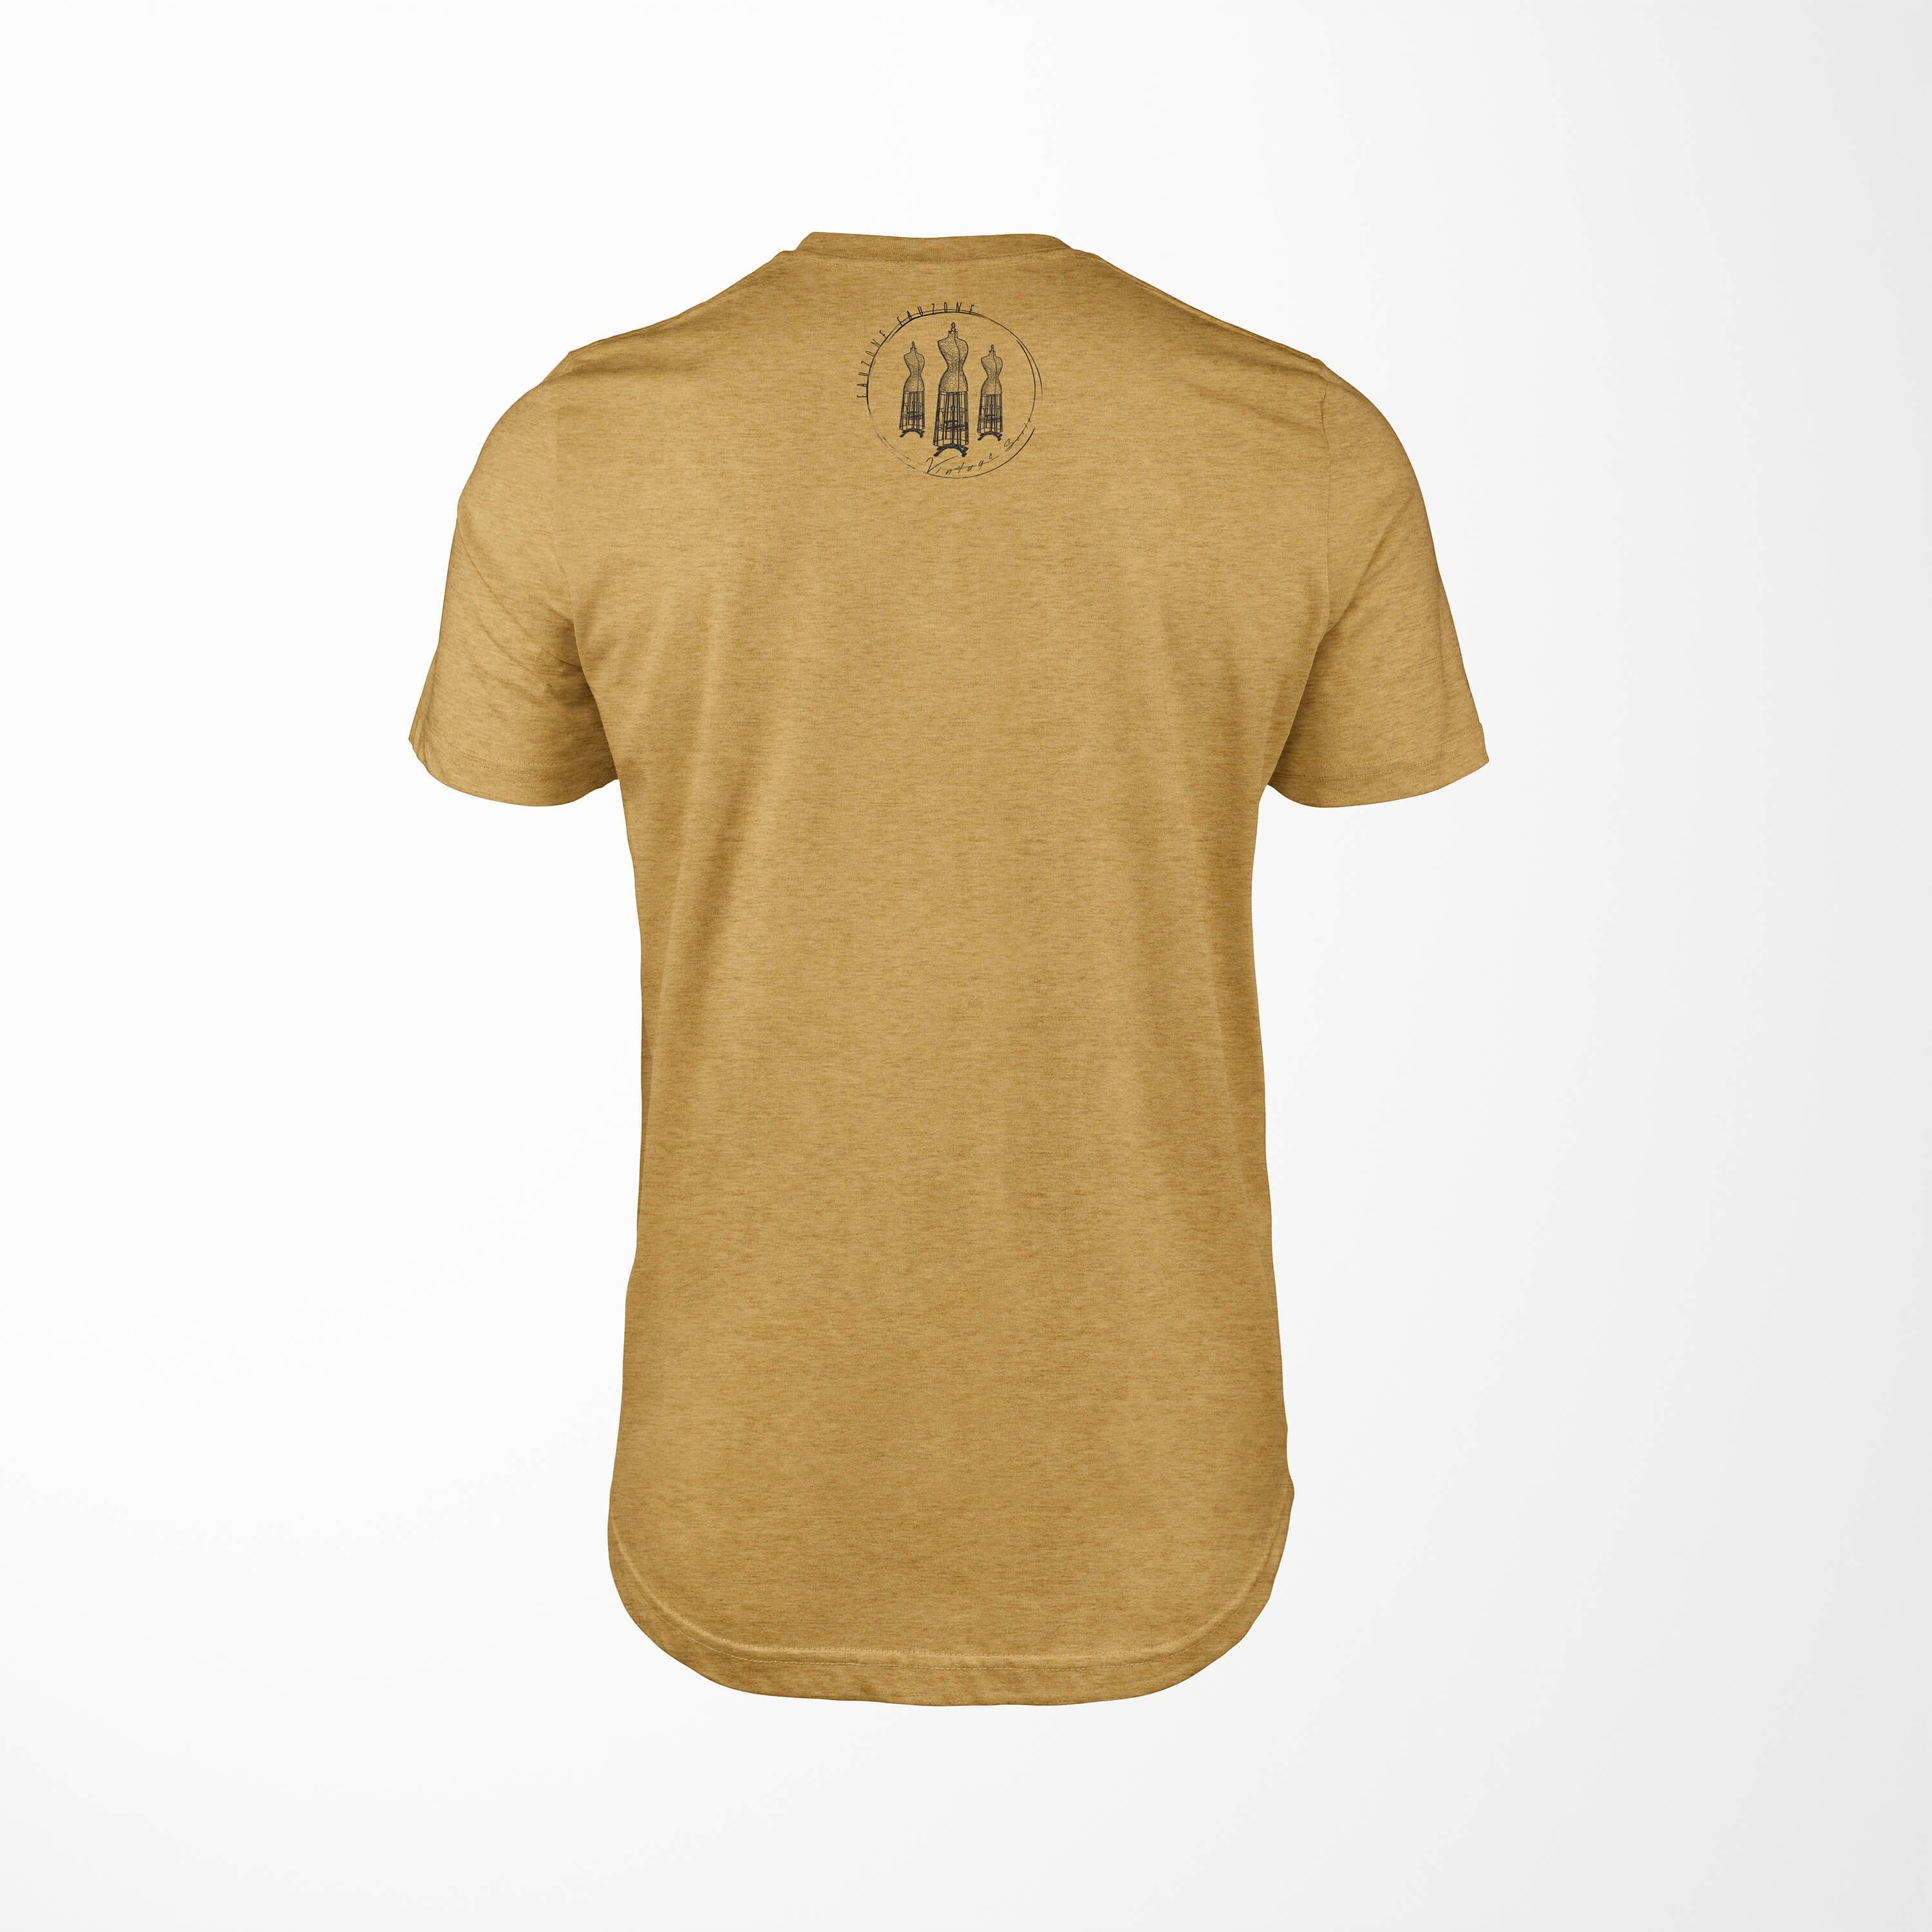 Sinus Art Antique Herren Vintage T-Shirt Gold T-Shirt Kleiderform